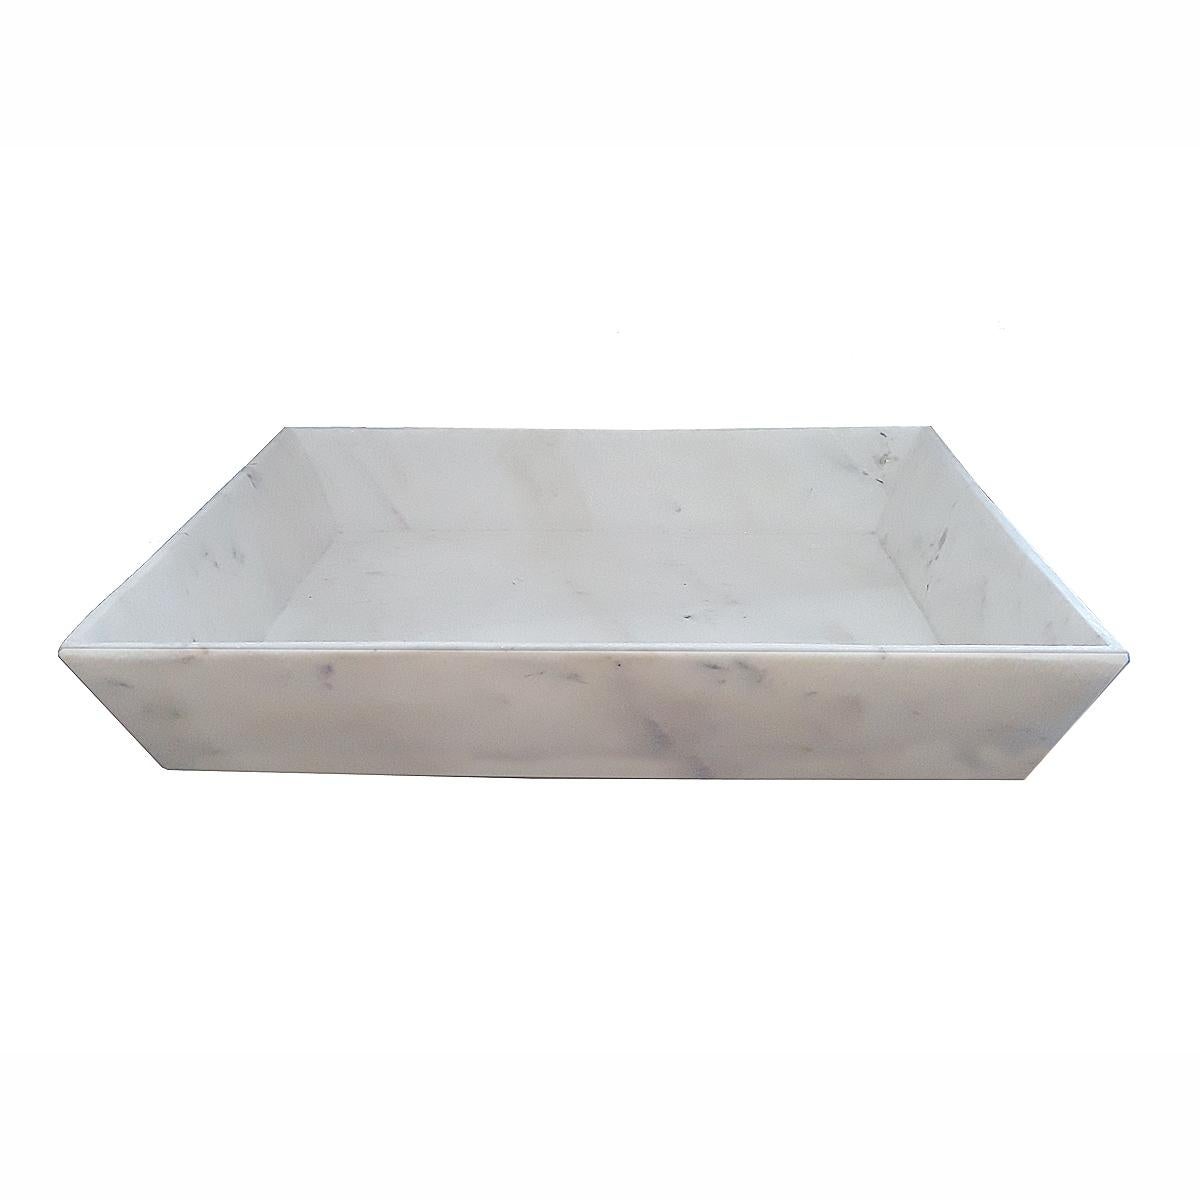 marble tray india